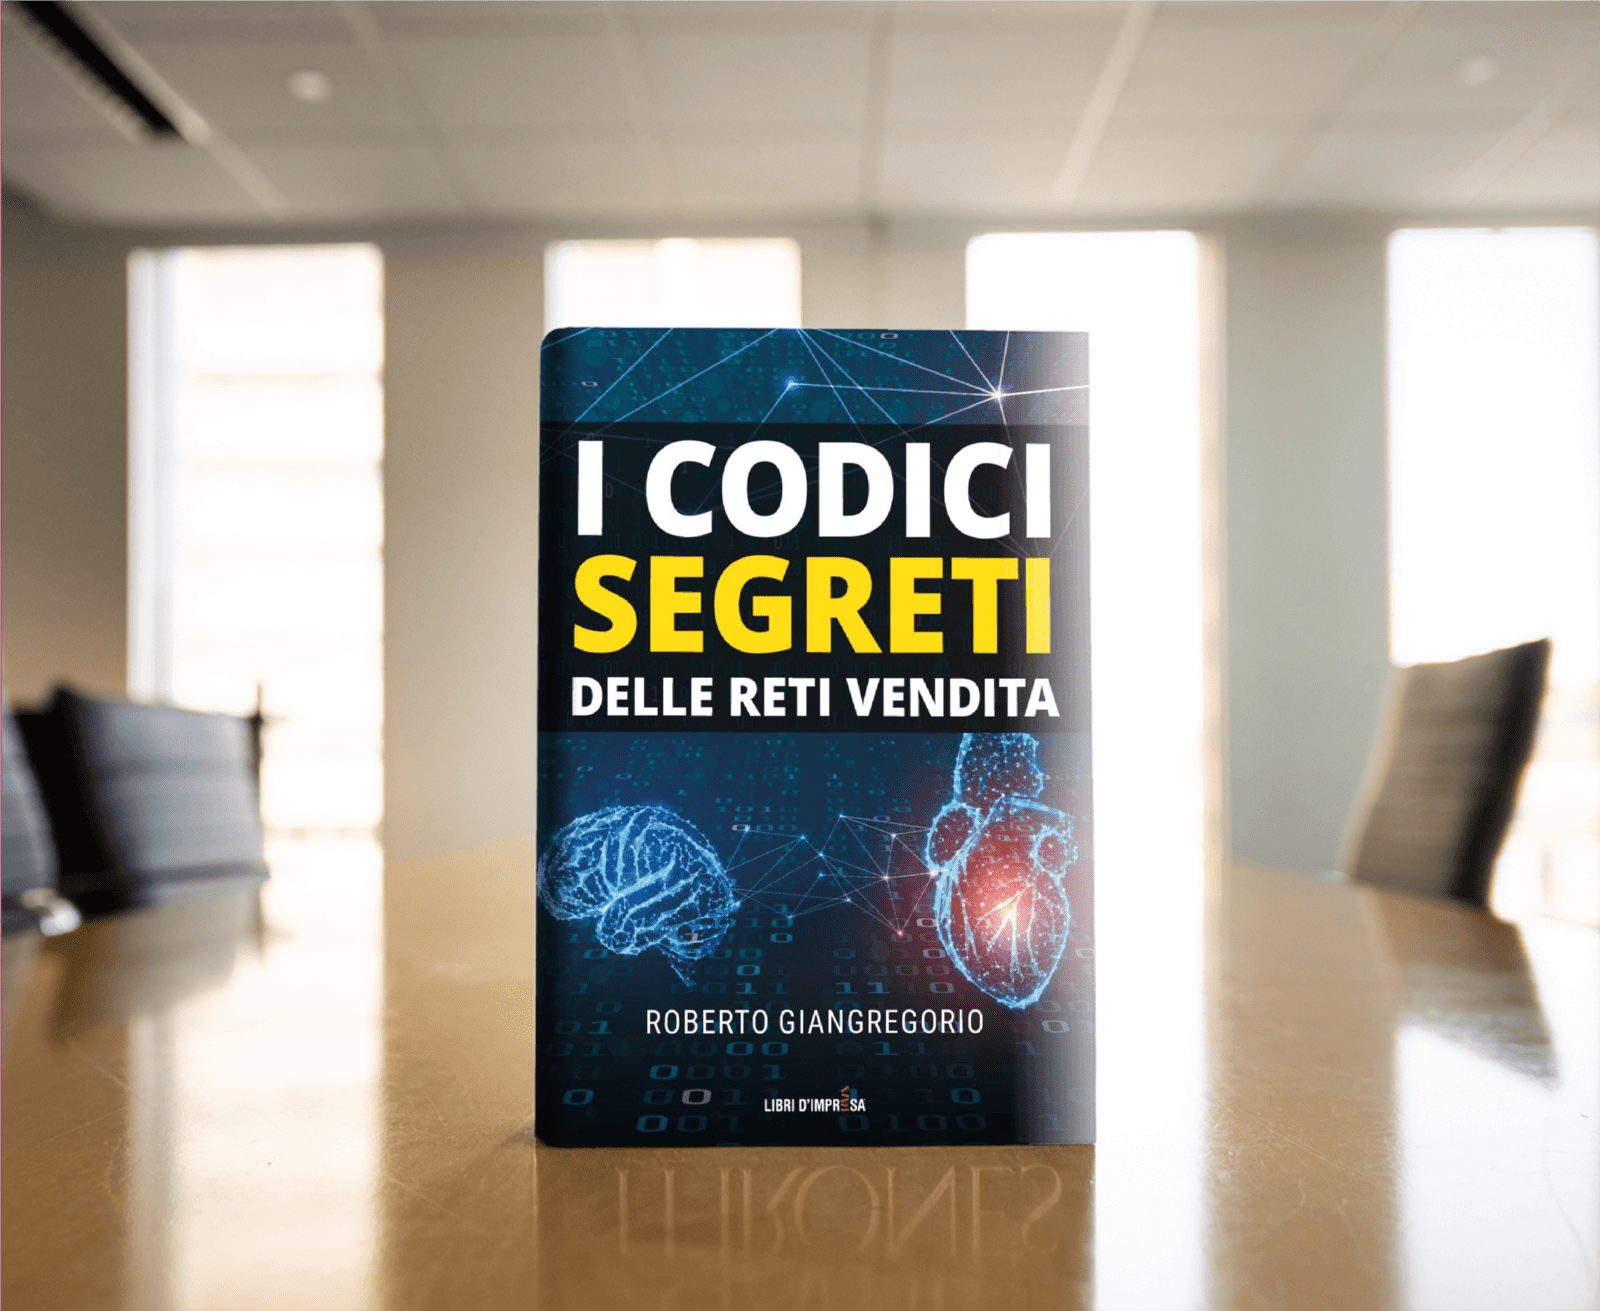 I codici segreti delle reti vendita - Roberto Giangregorio - Libri d’impresa